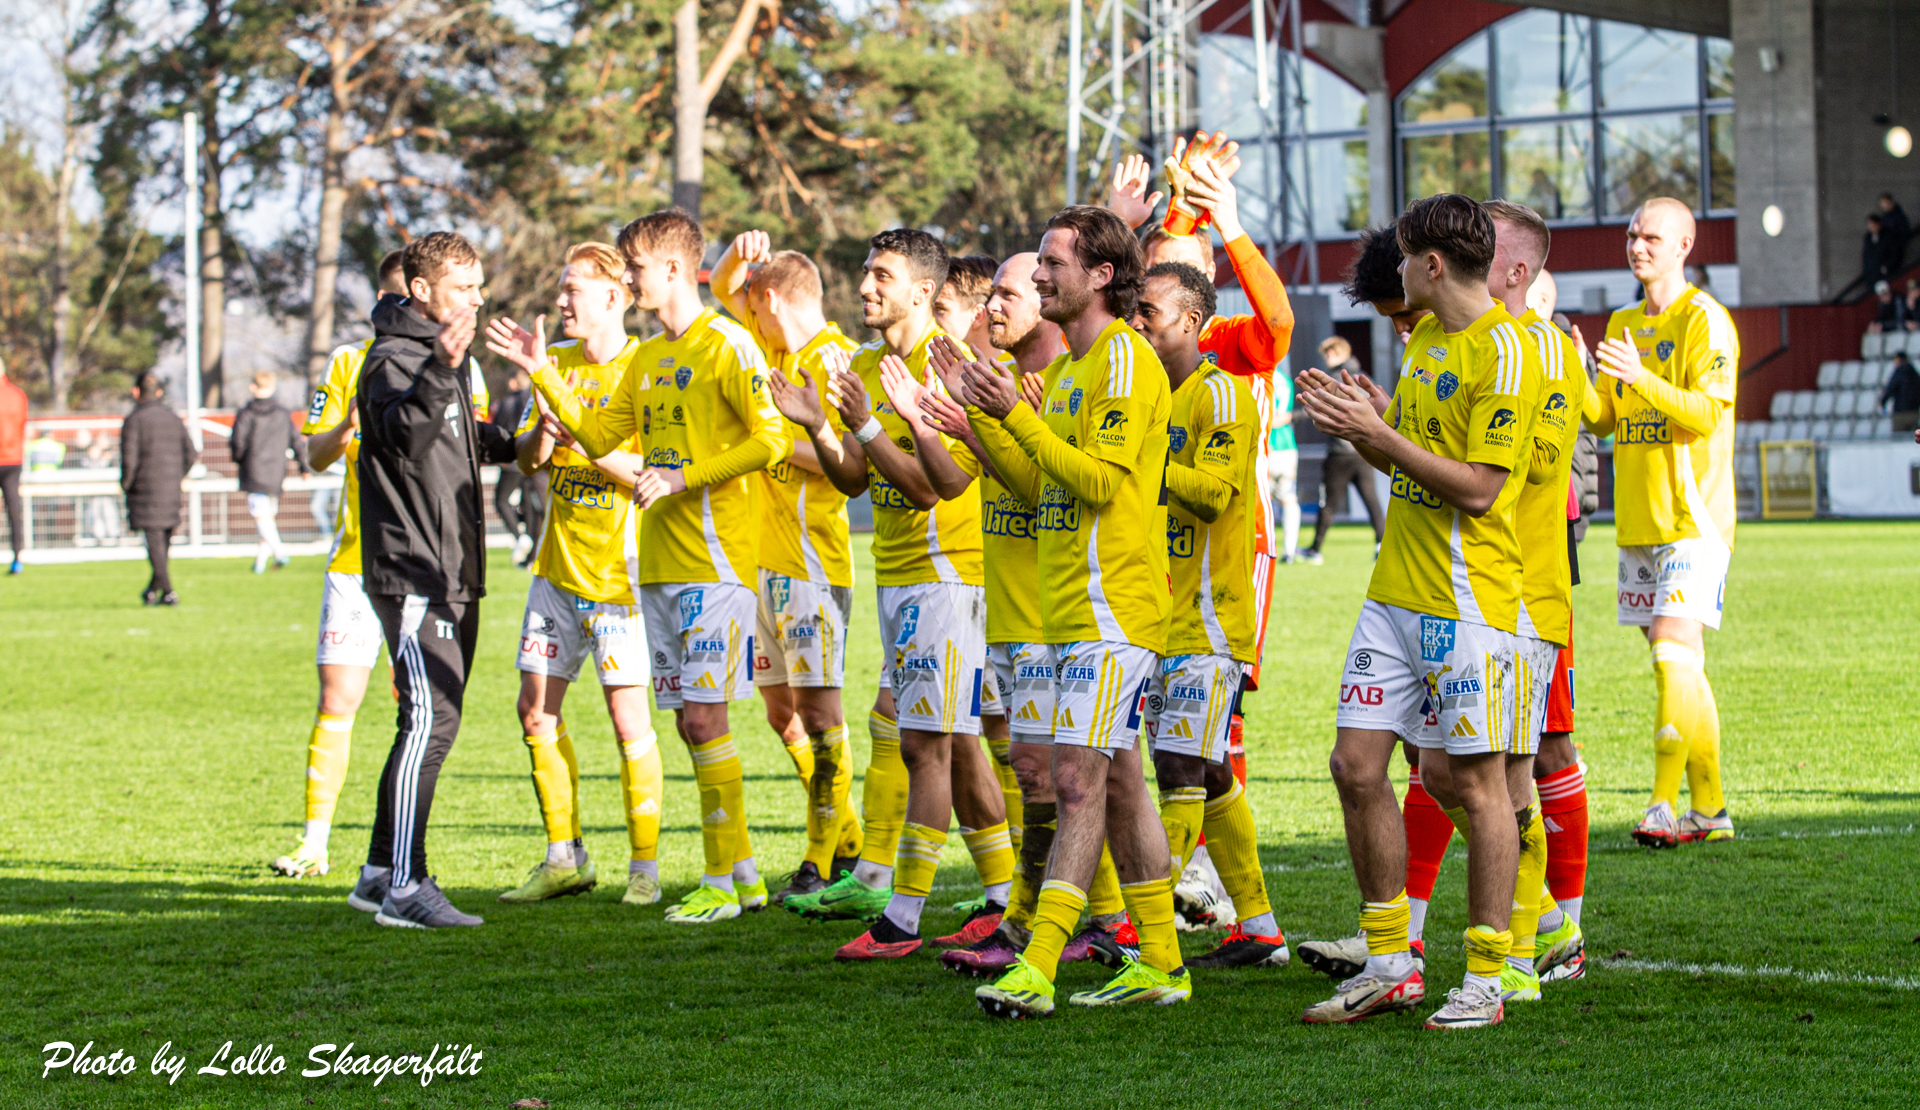 Finfin 2-1-seger i Jönköping: ”Bortastödet är magiskt”